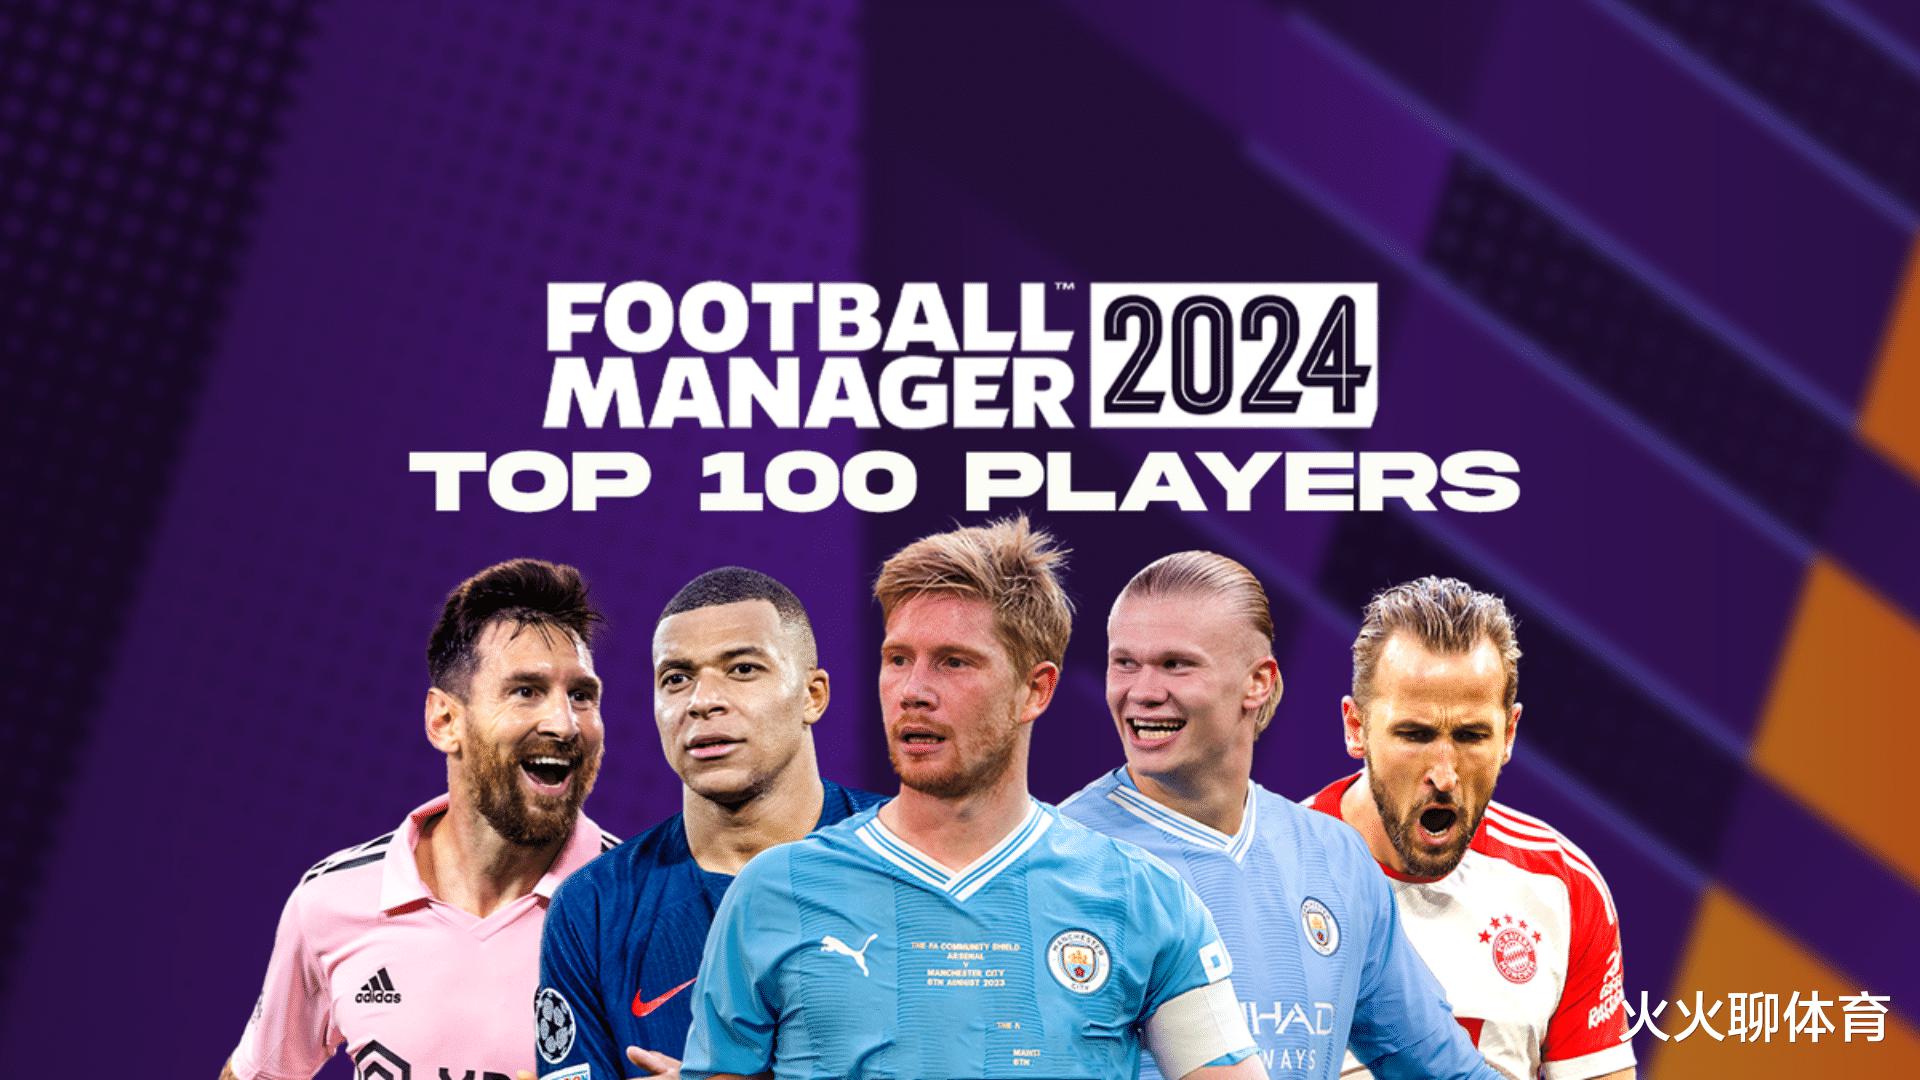 《足球经理2024》中的前100名球员排名